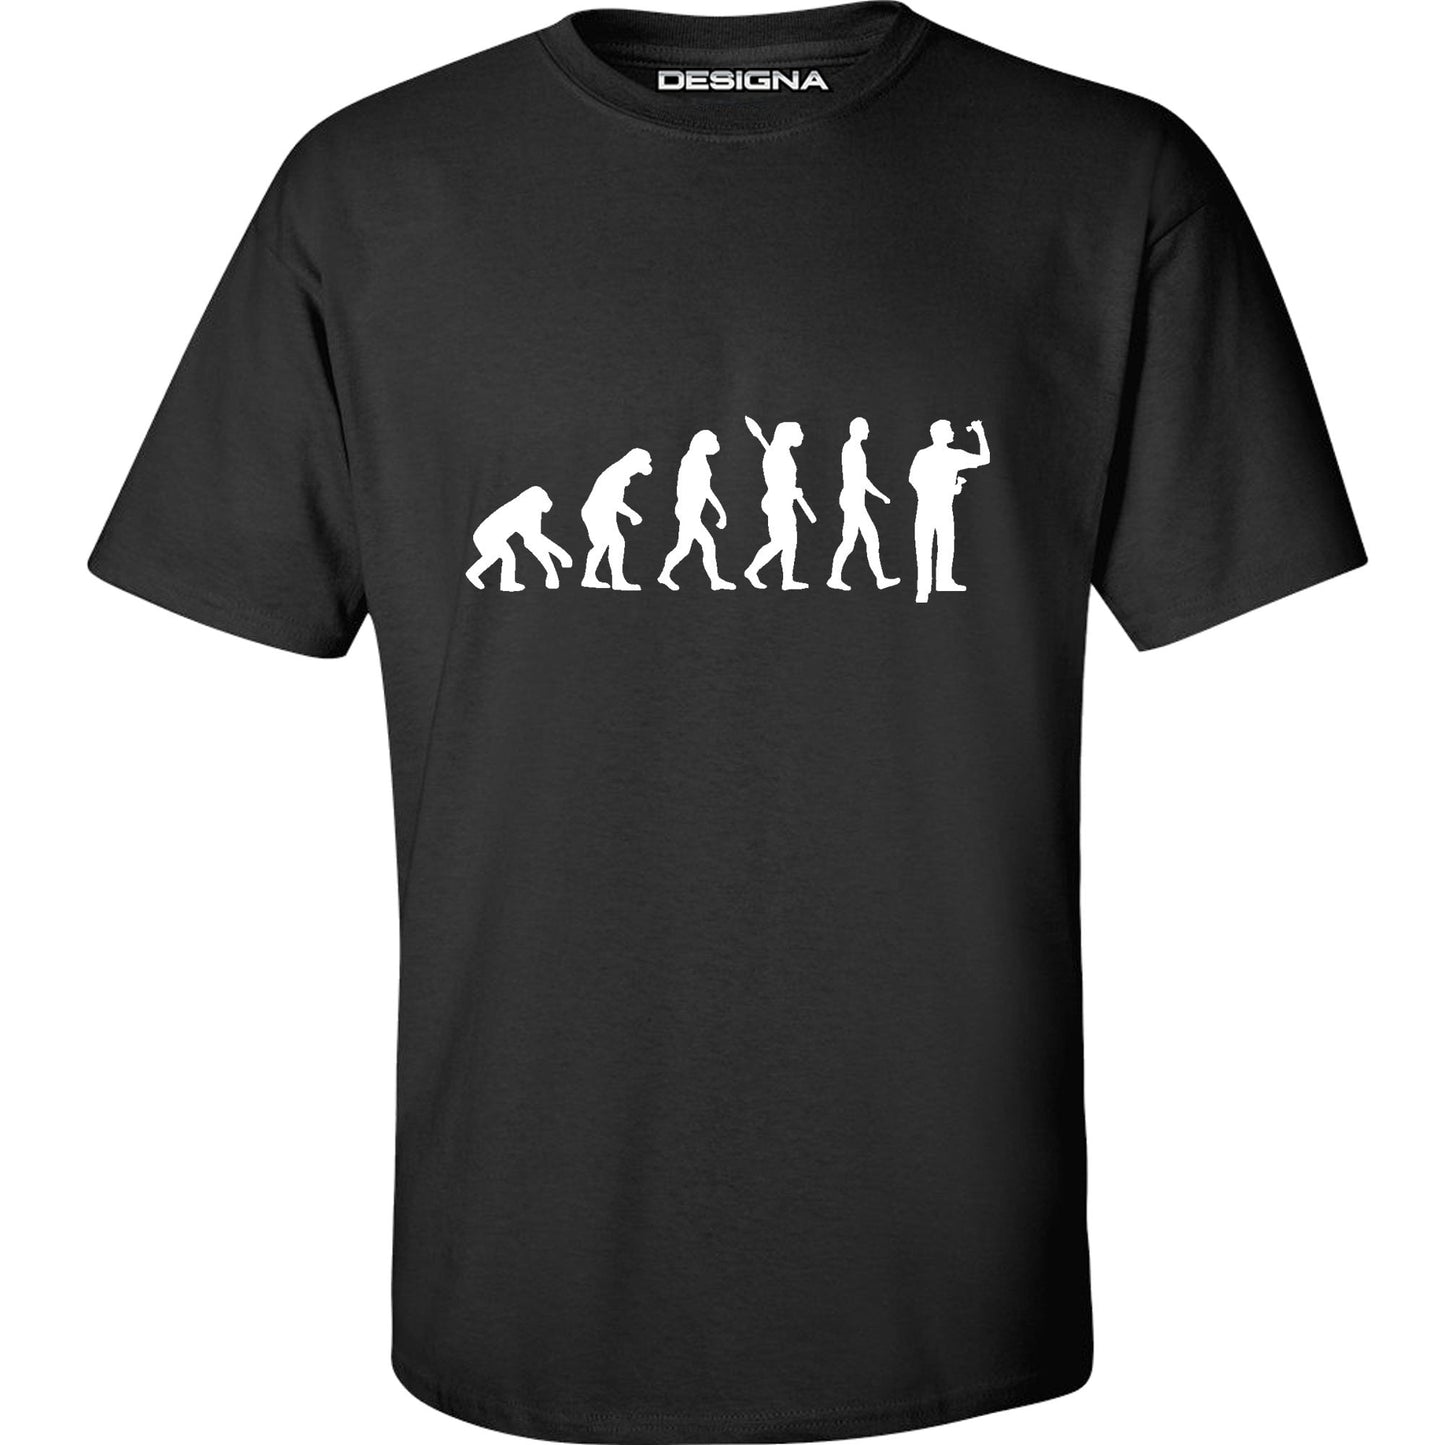 T Shirt - Humour Dart T-Shirt - Black - Evolution of a Dart Player